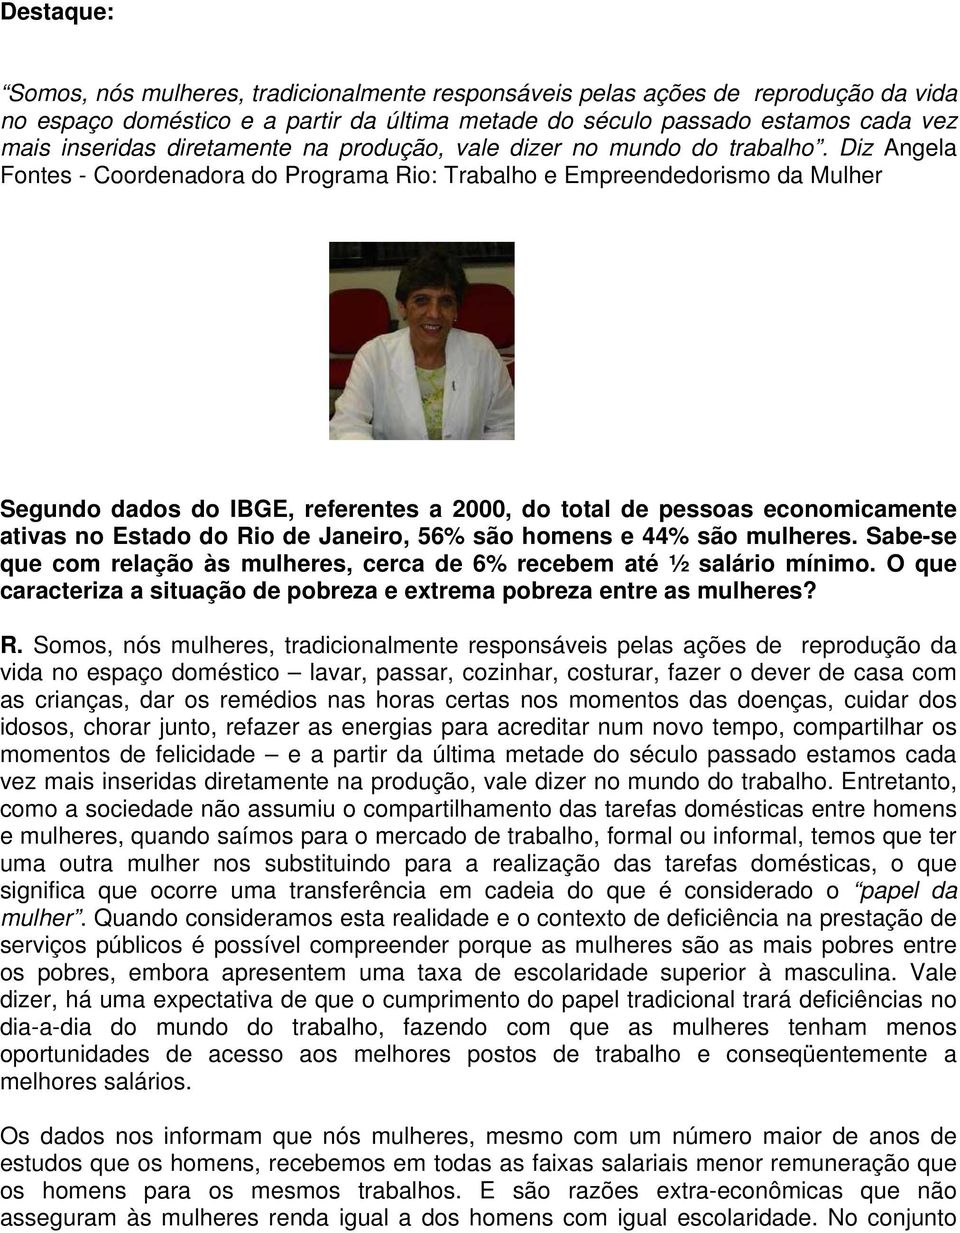 Diz Angela Fontes - Coordenadora do Programa Rio: Trabalho e Empreendedorismo da Mulher Segundo dados do IBGE, referentes a 2000, do total de pessoas economicamente ativas no Estado do Rio de